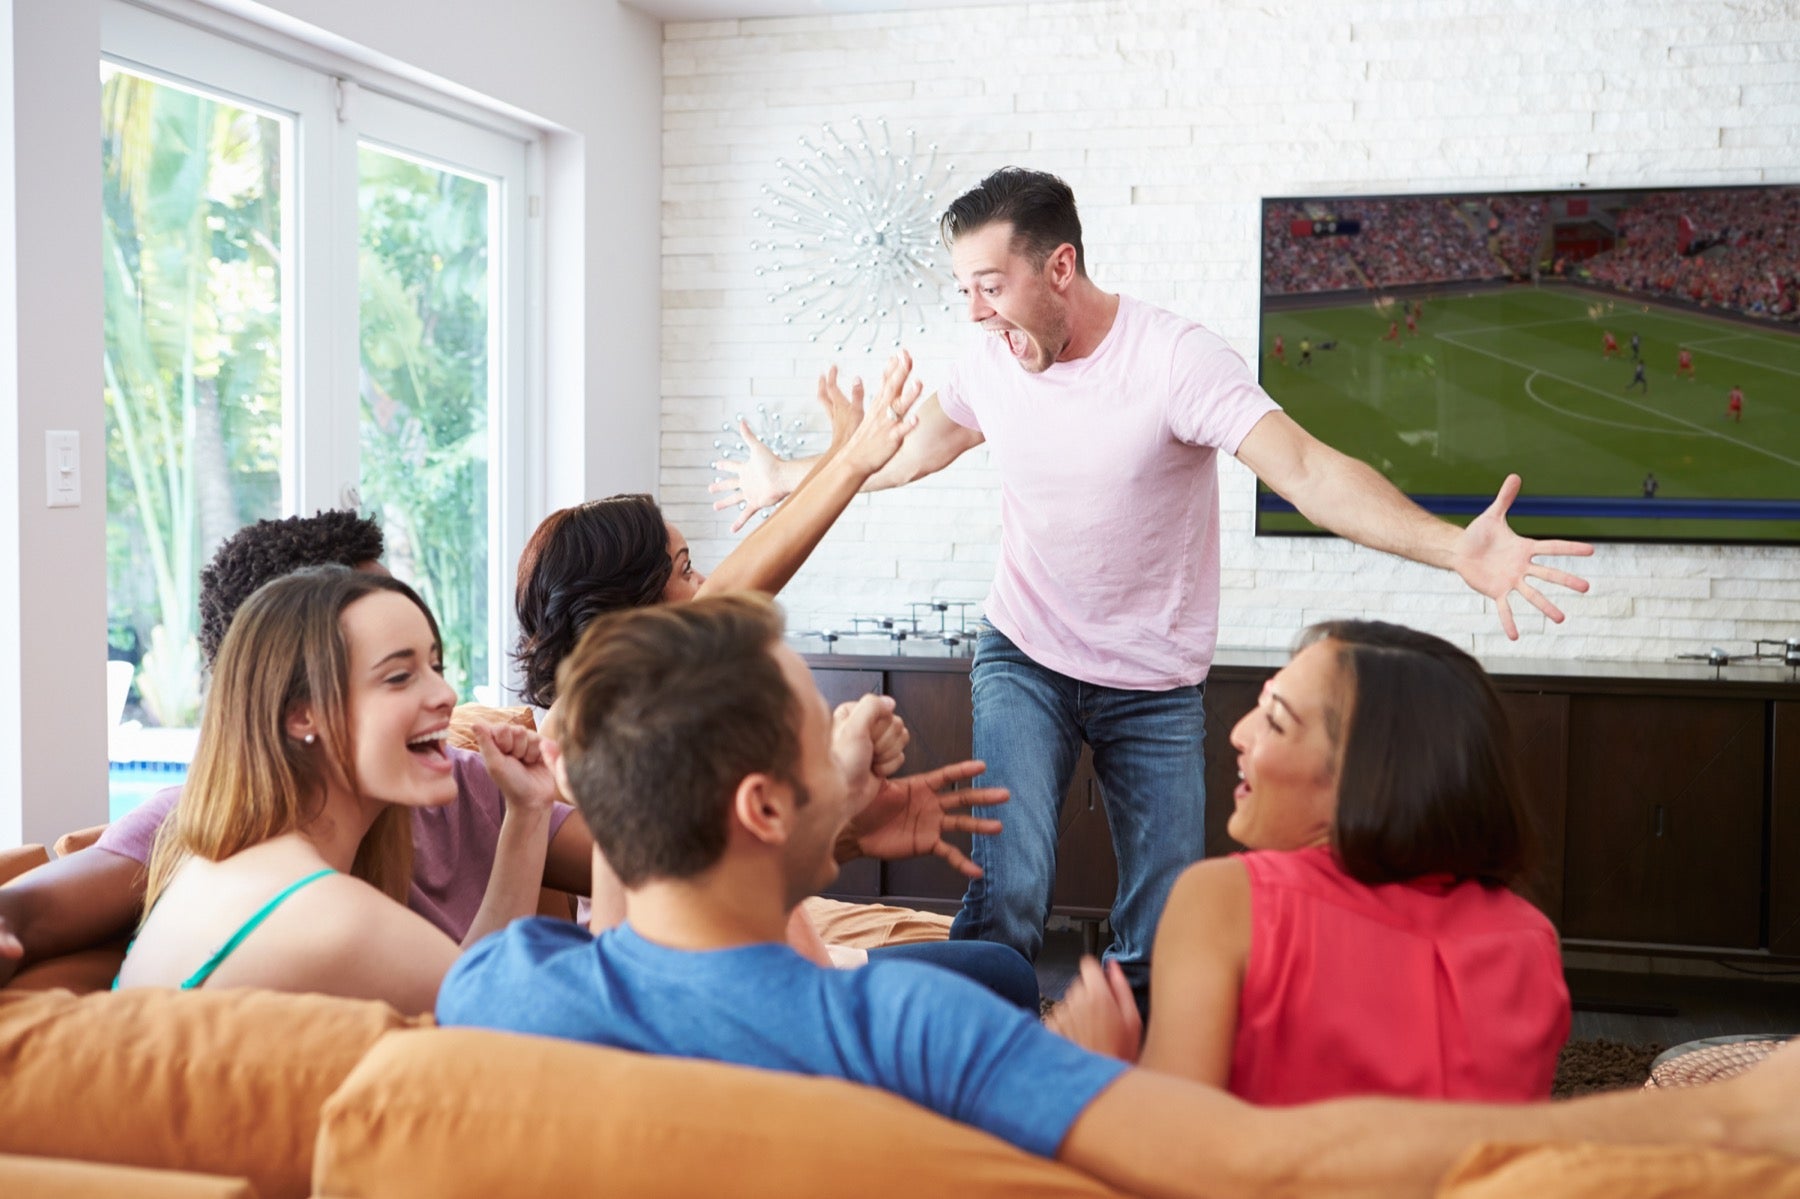 مشاهدة كأس العالم يمكن أن تحسن صحتك